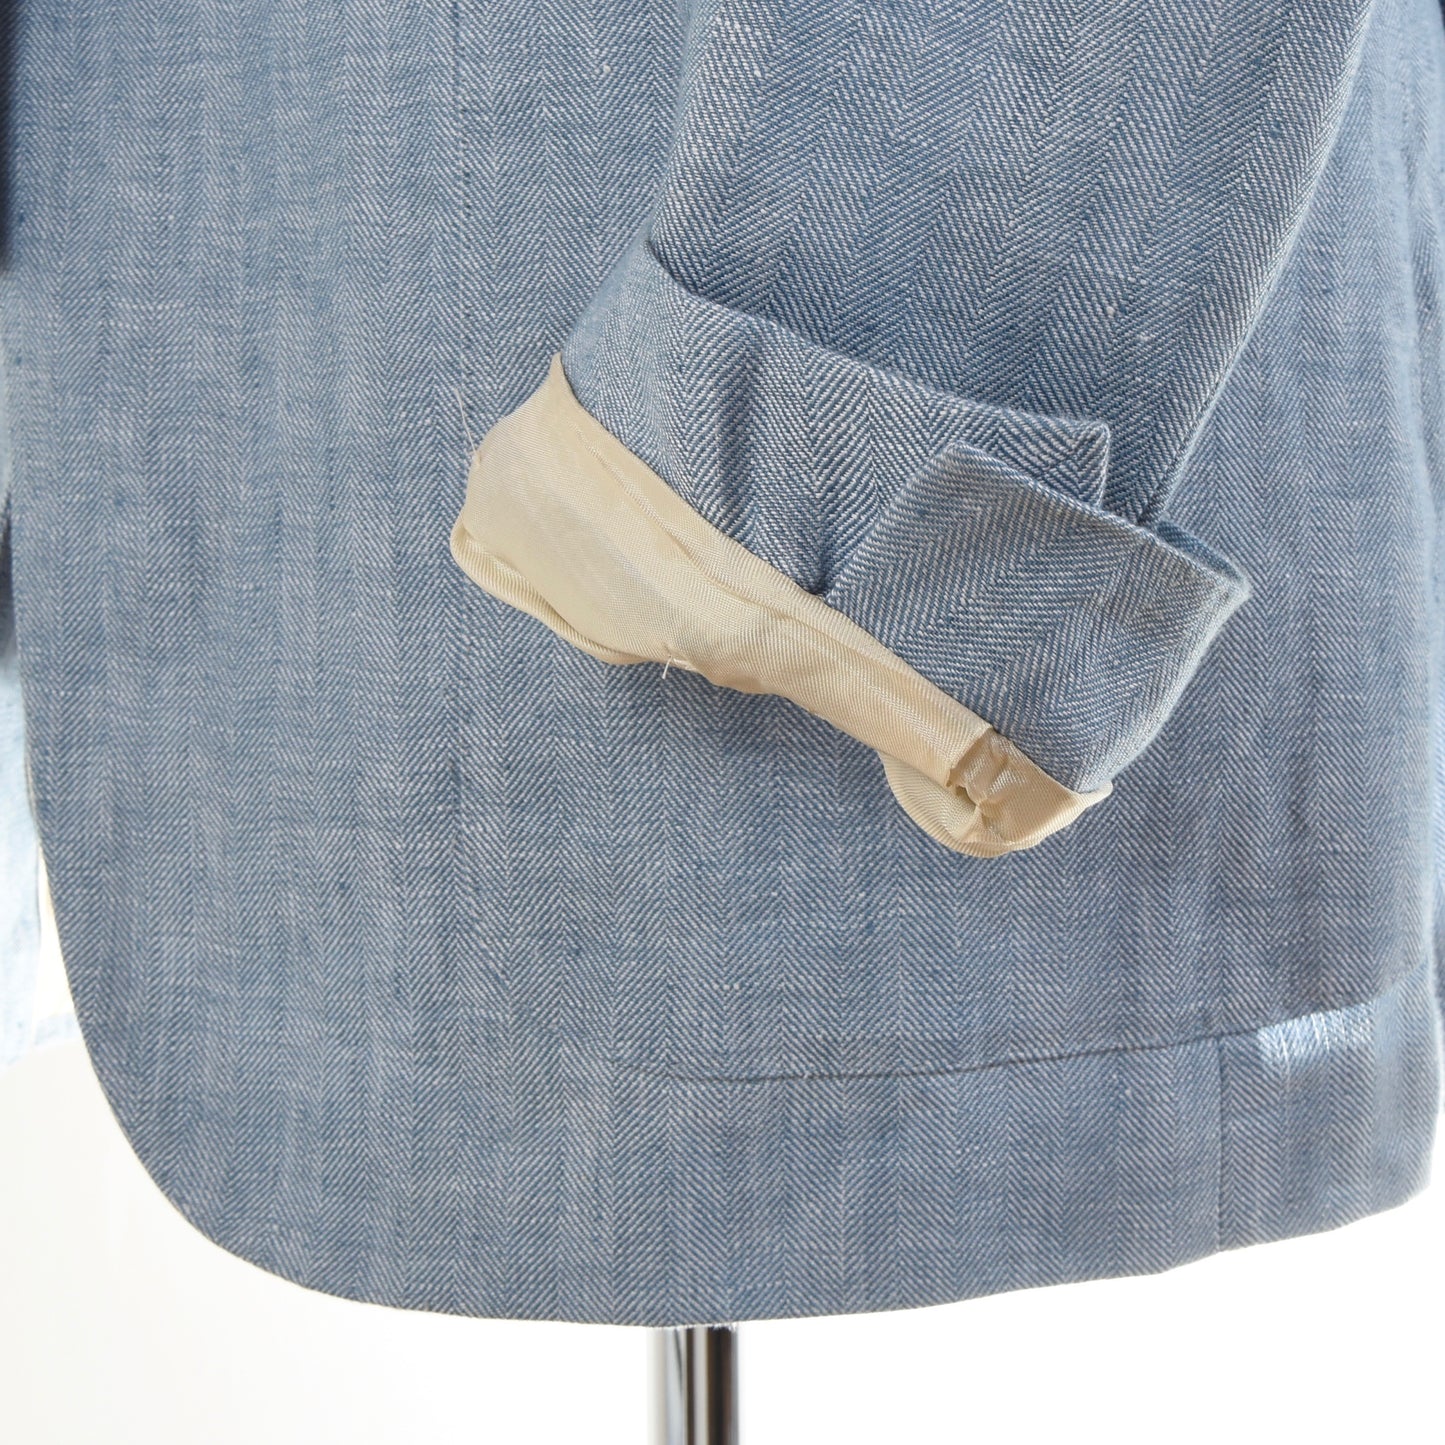 Corneliani Linen Jacket Size 48 - Blue